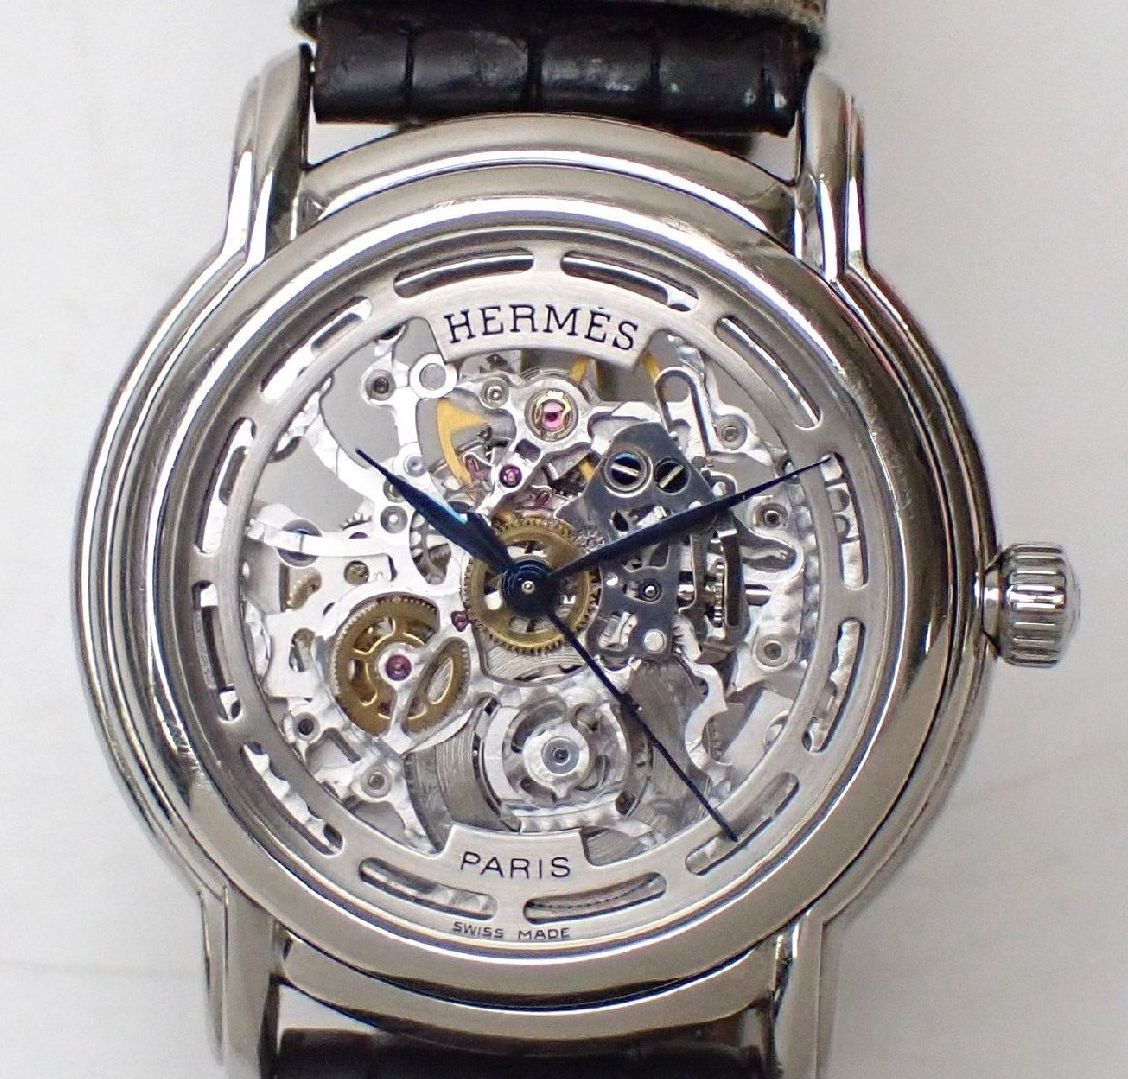 HERMES/エルメス セザム スケルトン 自動巻き腕時計 SM1.710